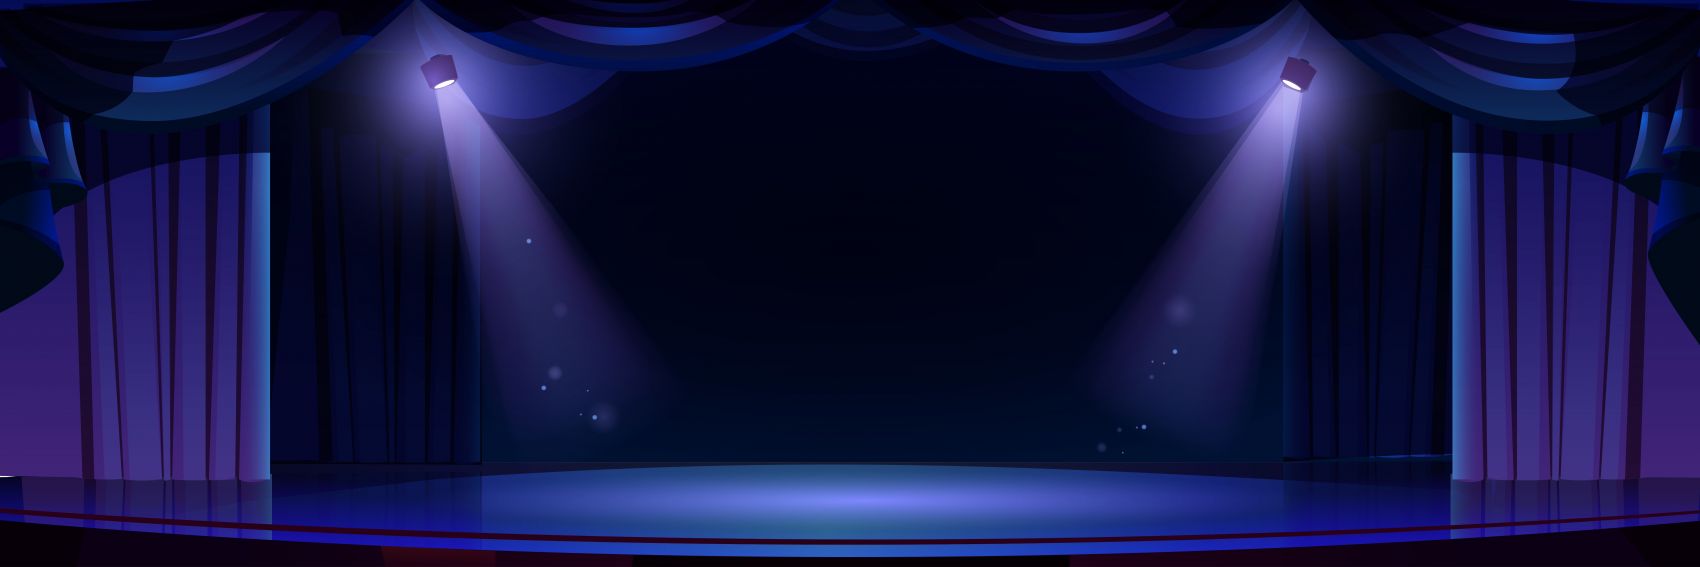 蓝紫色聚光灯舞台素材下载图片